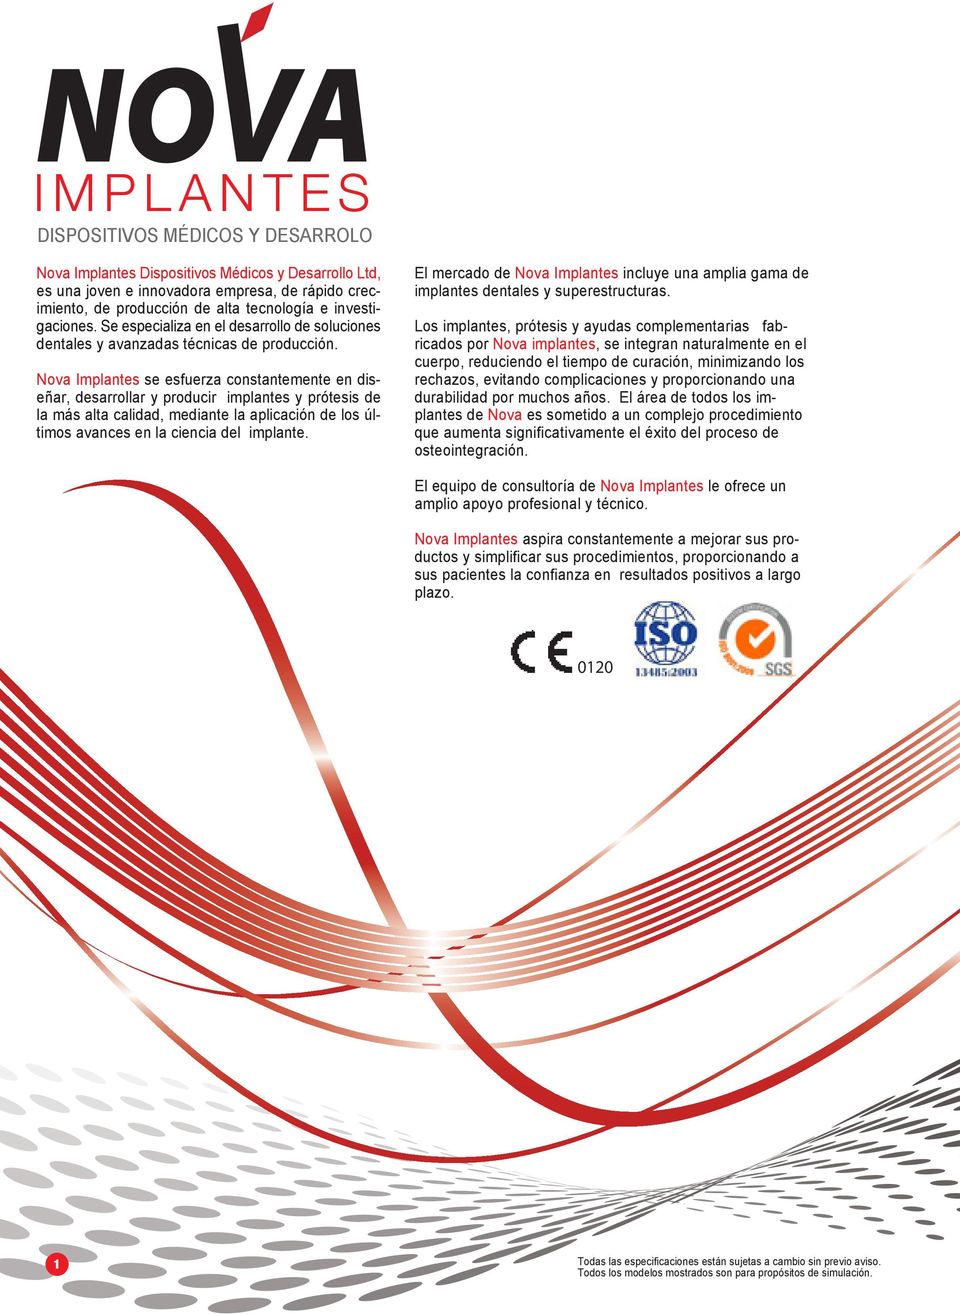 Nova Implantes se esfuerza constantemente en diseñar, desarrollar y producir implantes y prótesis de la más alta calidad, mediante la aplicación de los últimos avances en la ciencia del implante.